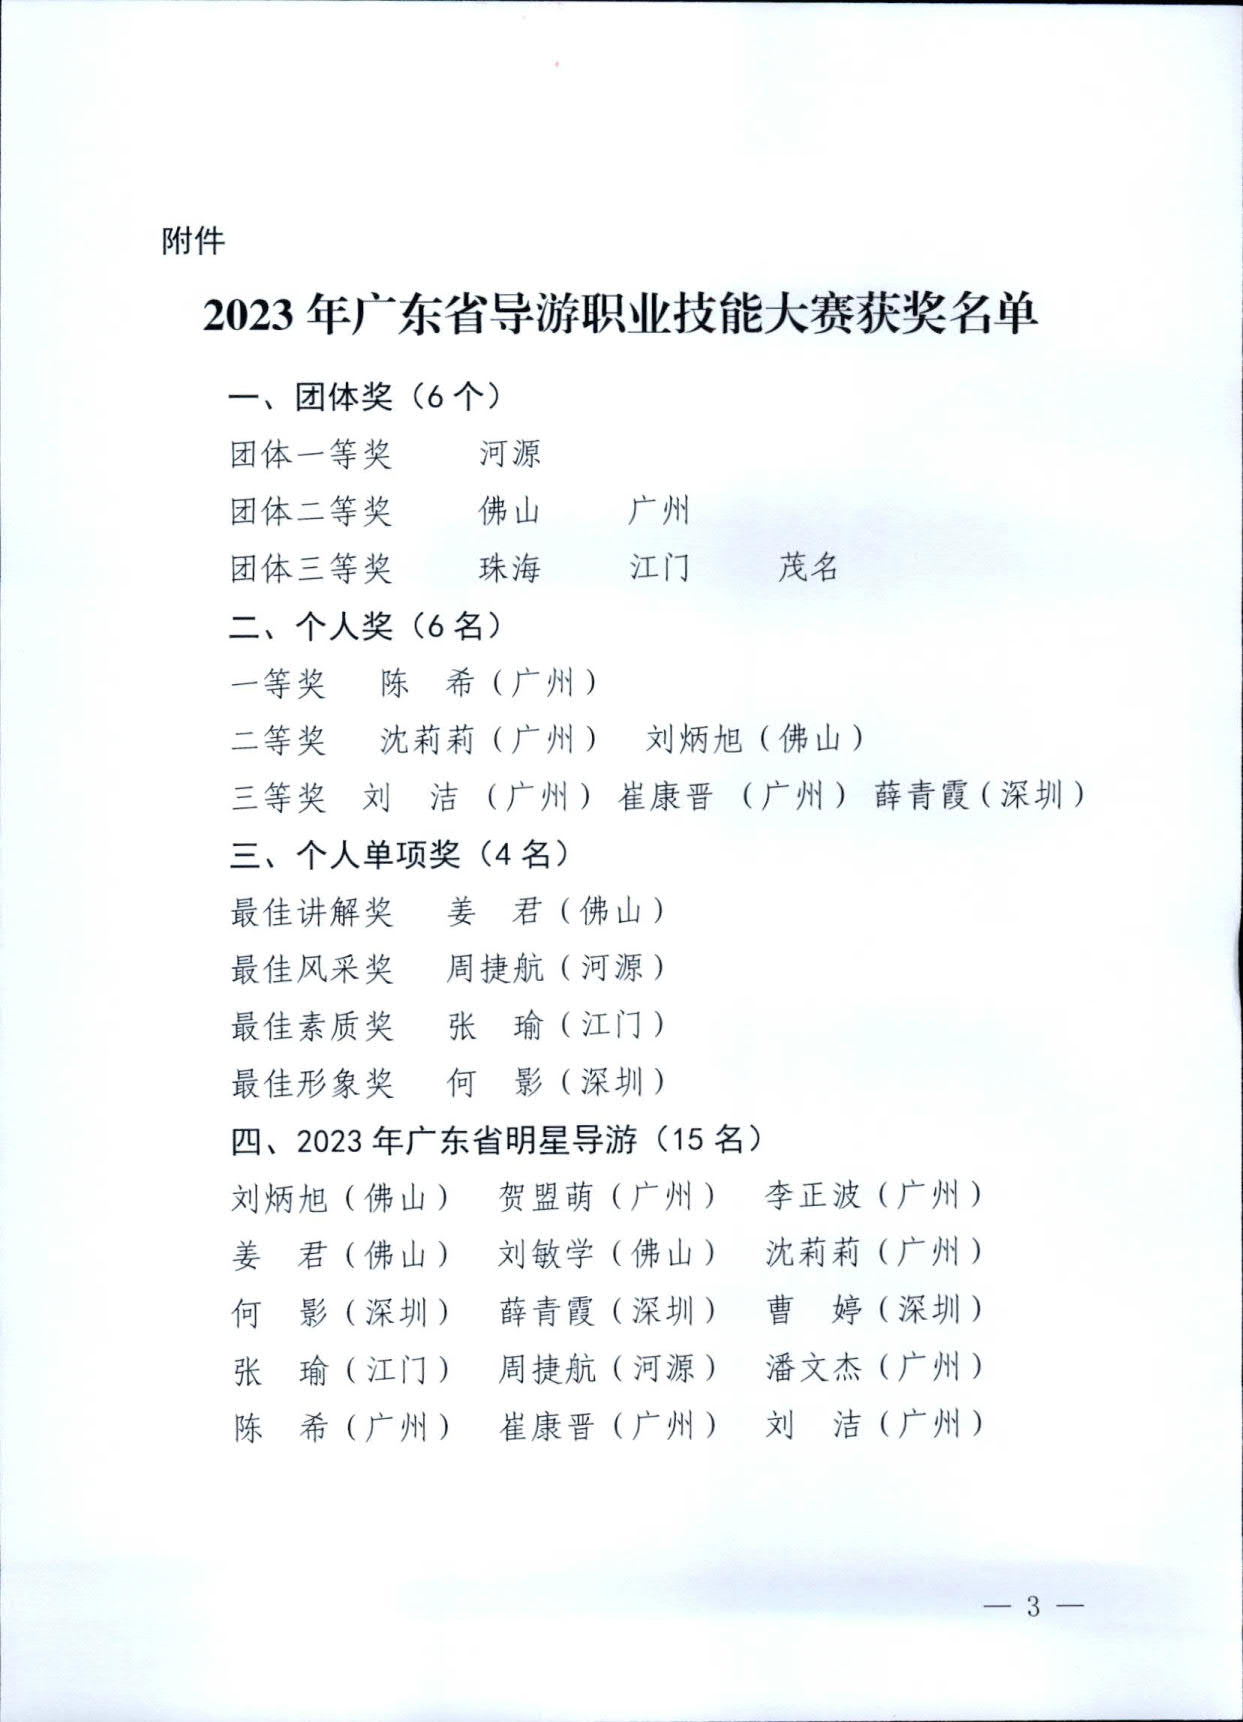 广东省文化和旅游厅关于2023年广东省导游职业技能大赛的通报_3.jpg